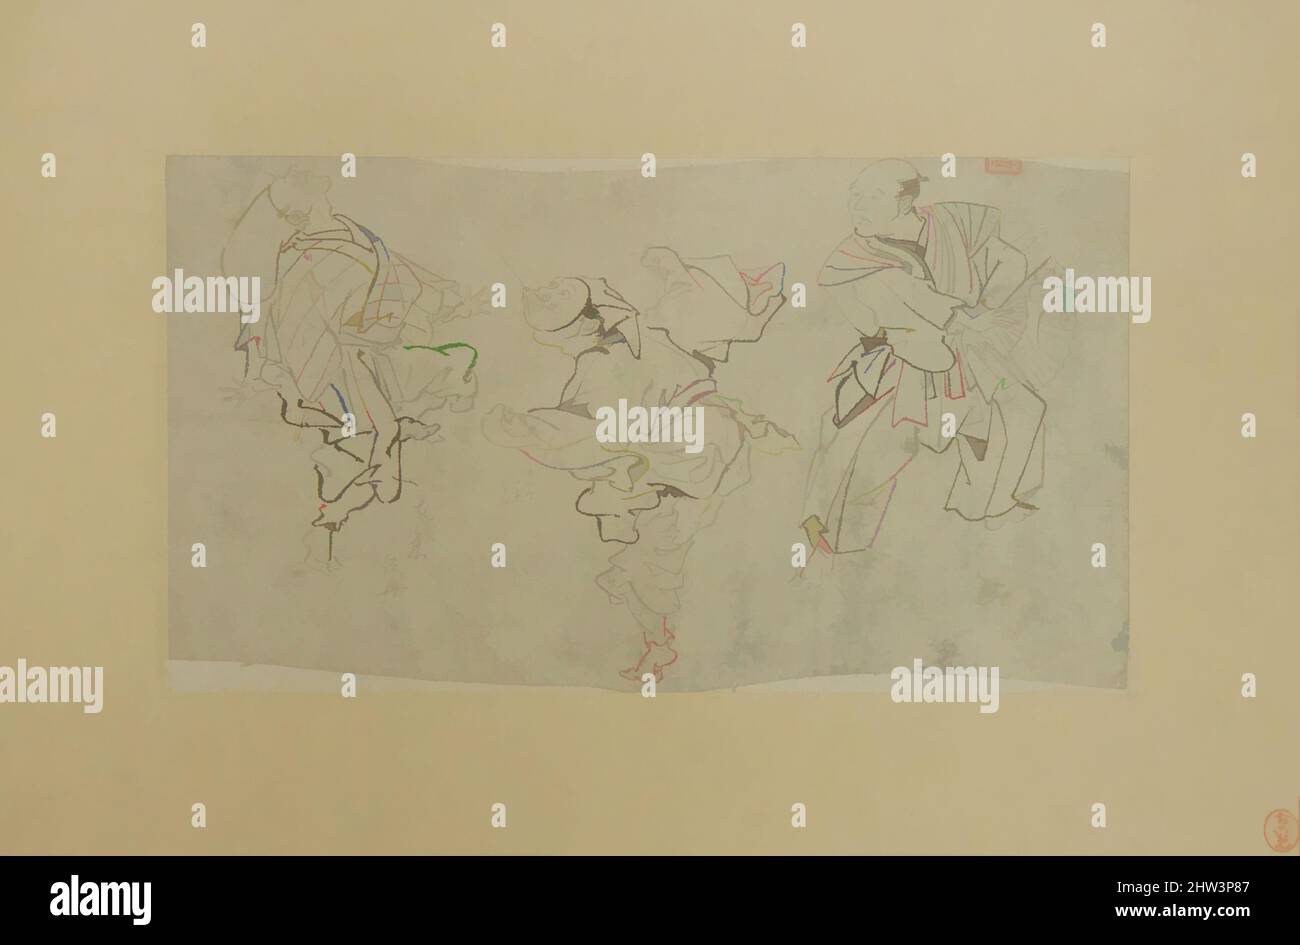 Kunst inspiriert von drei Kyōgen-Tänzern, Meiji-Zeit (1868–1912), Ende des 19.. Jahrhunderts, Japan, Tinte auf Papier, 6 x 10 1/4 Zoll (15,2 x 26 cm), Gemälde, Kawanabe Kyōsai (japanisch, 1831–1889), Dies scheint eine Vorzeichnung von Kyōsai zu einem Gemälde von kyōgen (humorvoll dramatisch, Klassische Werke, die von Artotop mit einem Schuss Moderne modernisiert wurden. Formen, Farbe und Wert, auffällige visuelle Wirkung auf Kunst. Emotionen durch Freiheit von Kunstwerken auf zeitgemäße Weise. Eine zeitlose Botschaft, die eine wild kreative neue Richtung verfolgt. Künstler, die sich dem digitalen Medium zuwenden und die Artotop NFT erschaffen Stockfoto